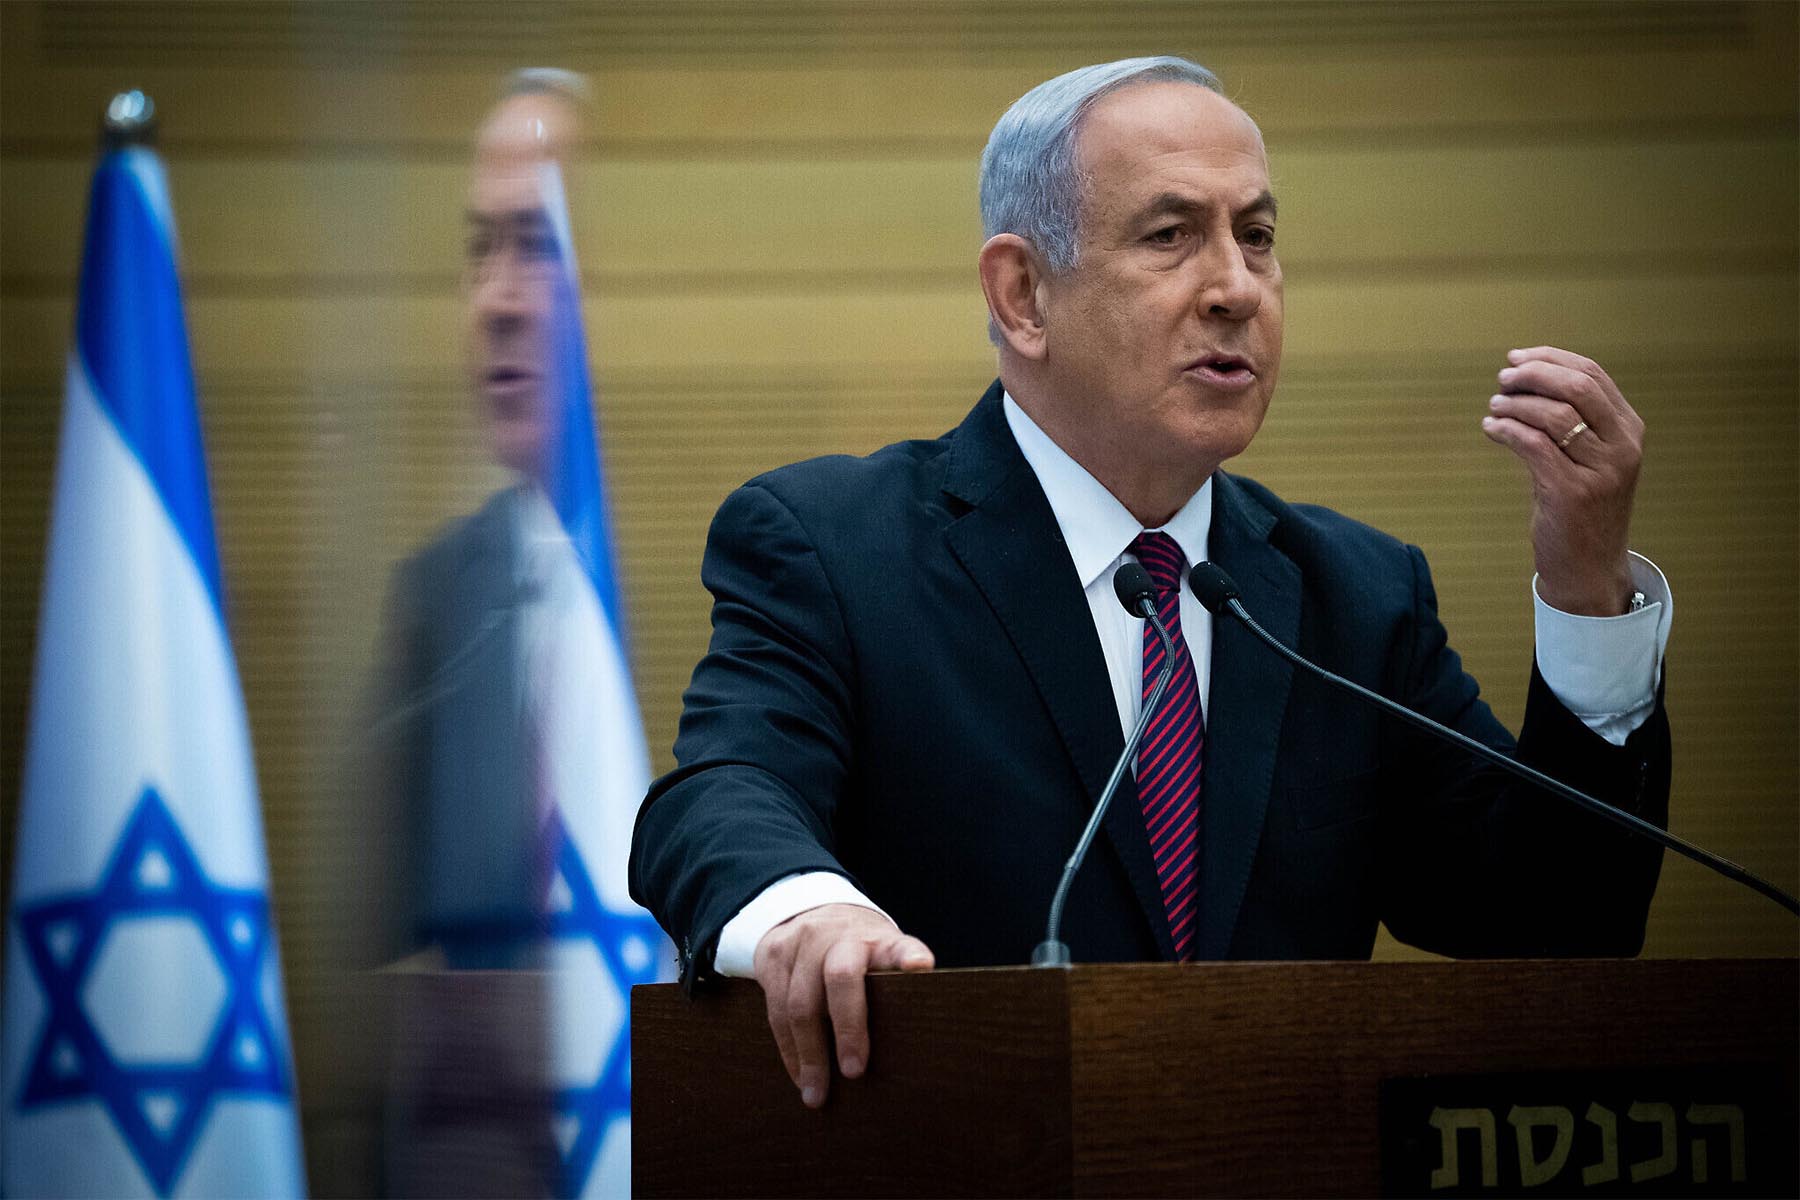 بنیامین نتانیاهو پس از استعفای اعضای میانه رو، کابینه جنگی اسرائیل را منحل کرد